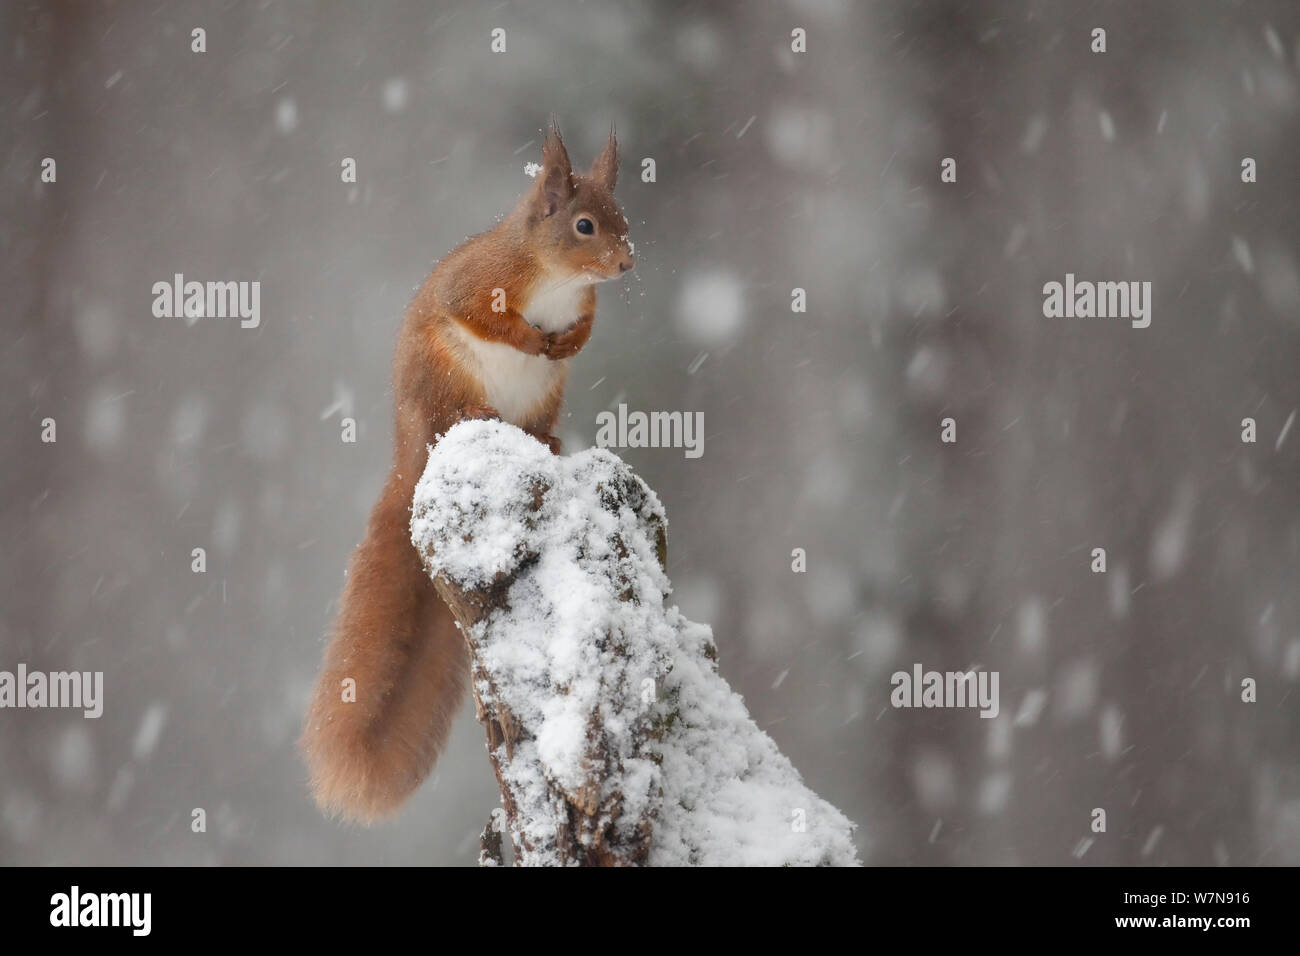 Red scoiattolo (Sciurus vulgaris) in presenza di neve sulla foresta di pini. Glenfeshie, Scozia, gennaio. Foto Stock